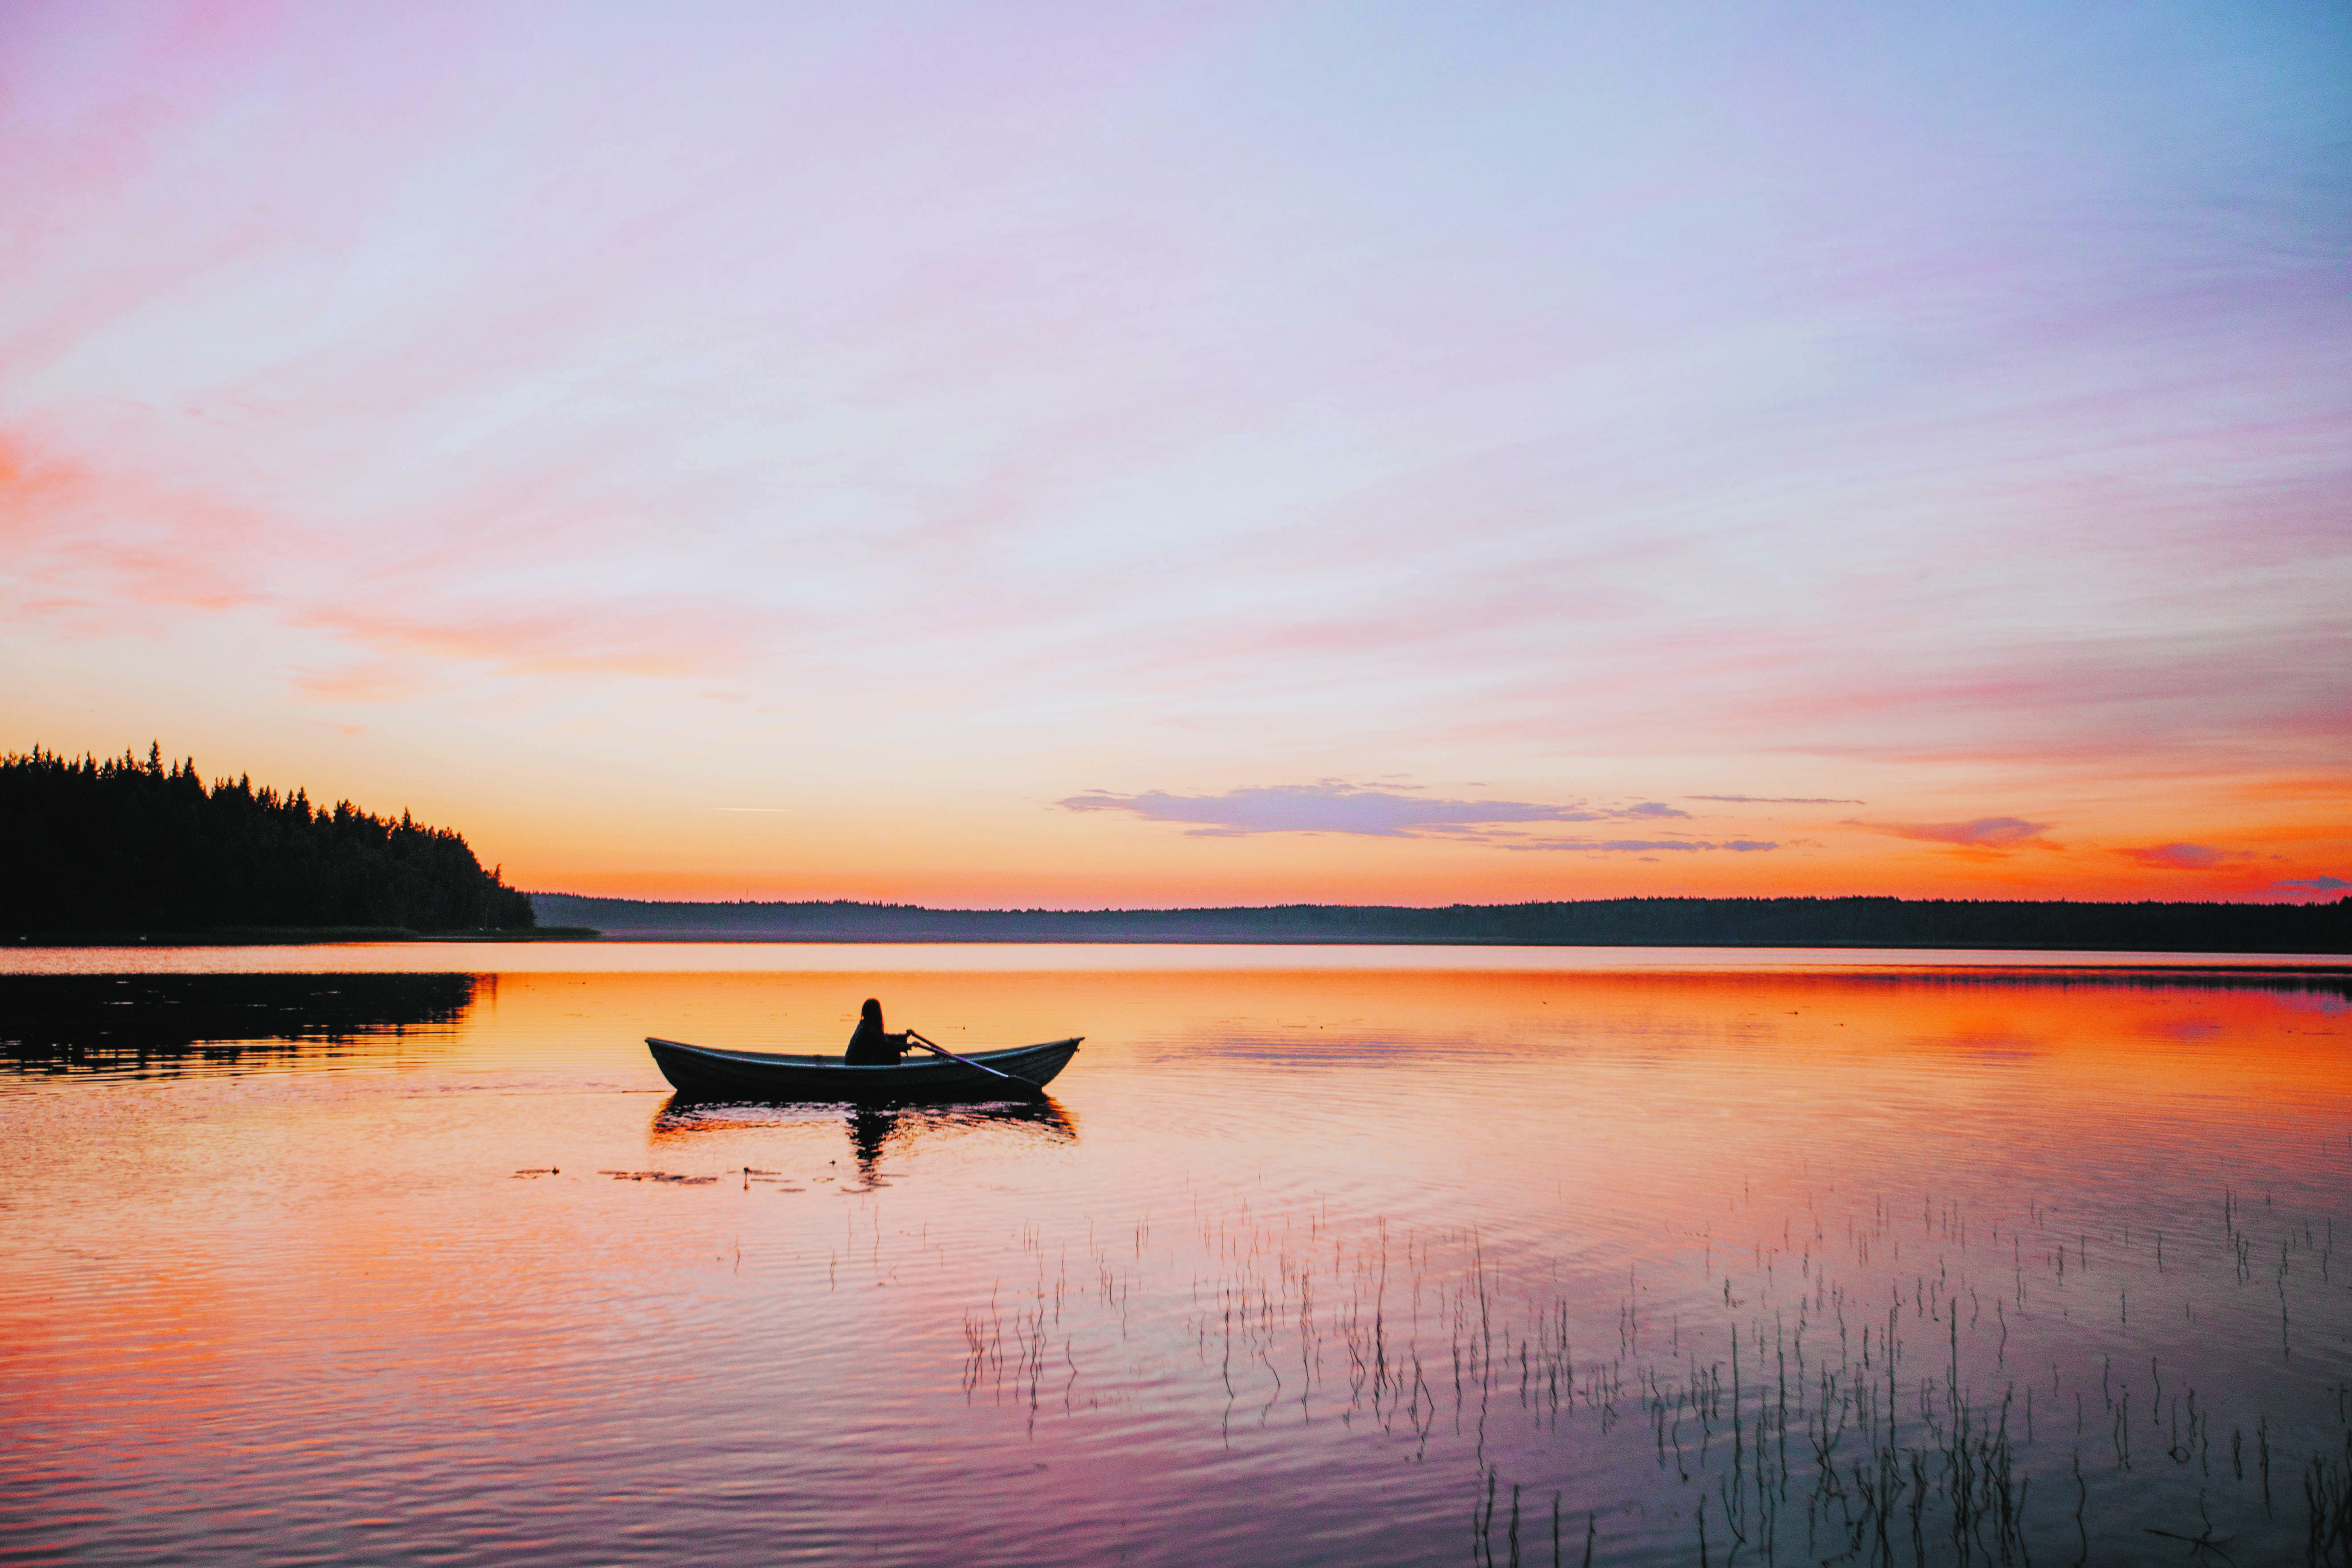 Finland – land of the Midnight Sun